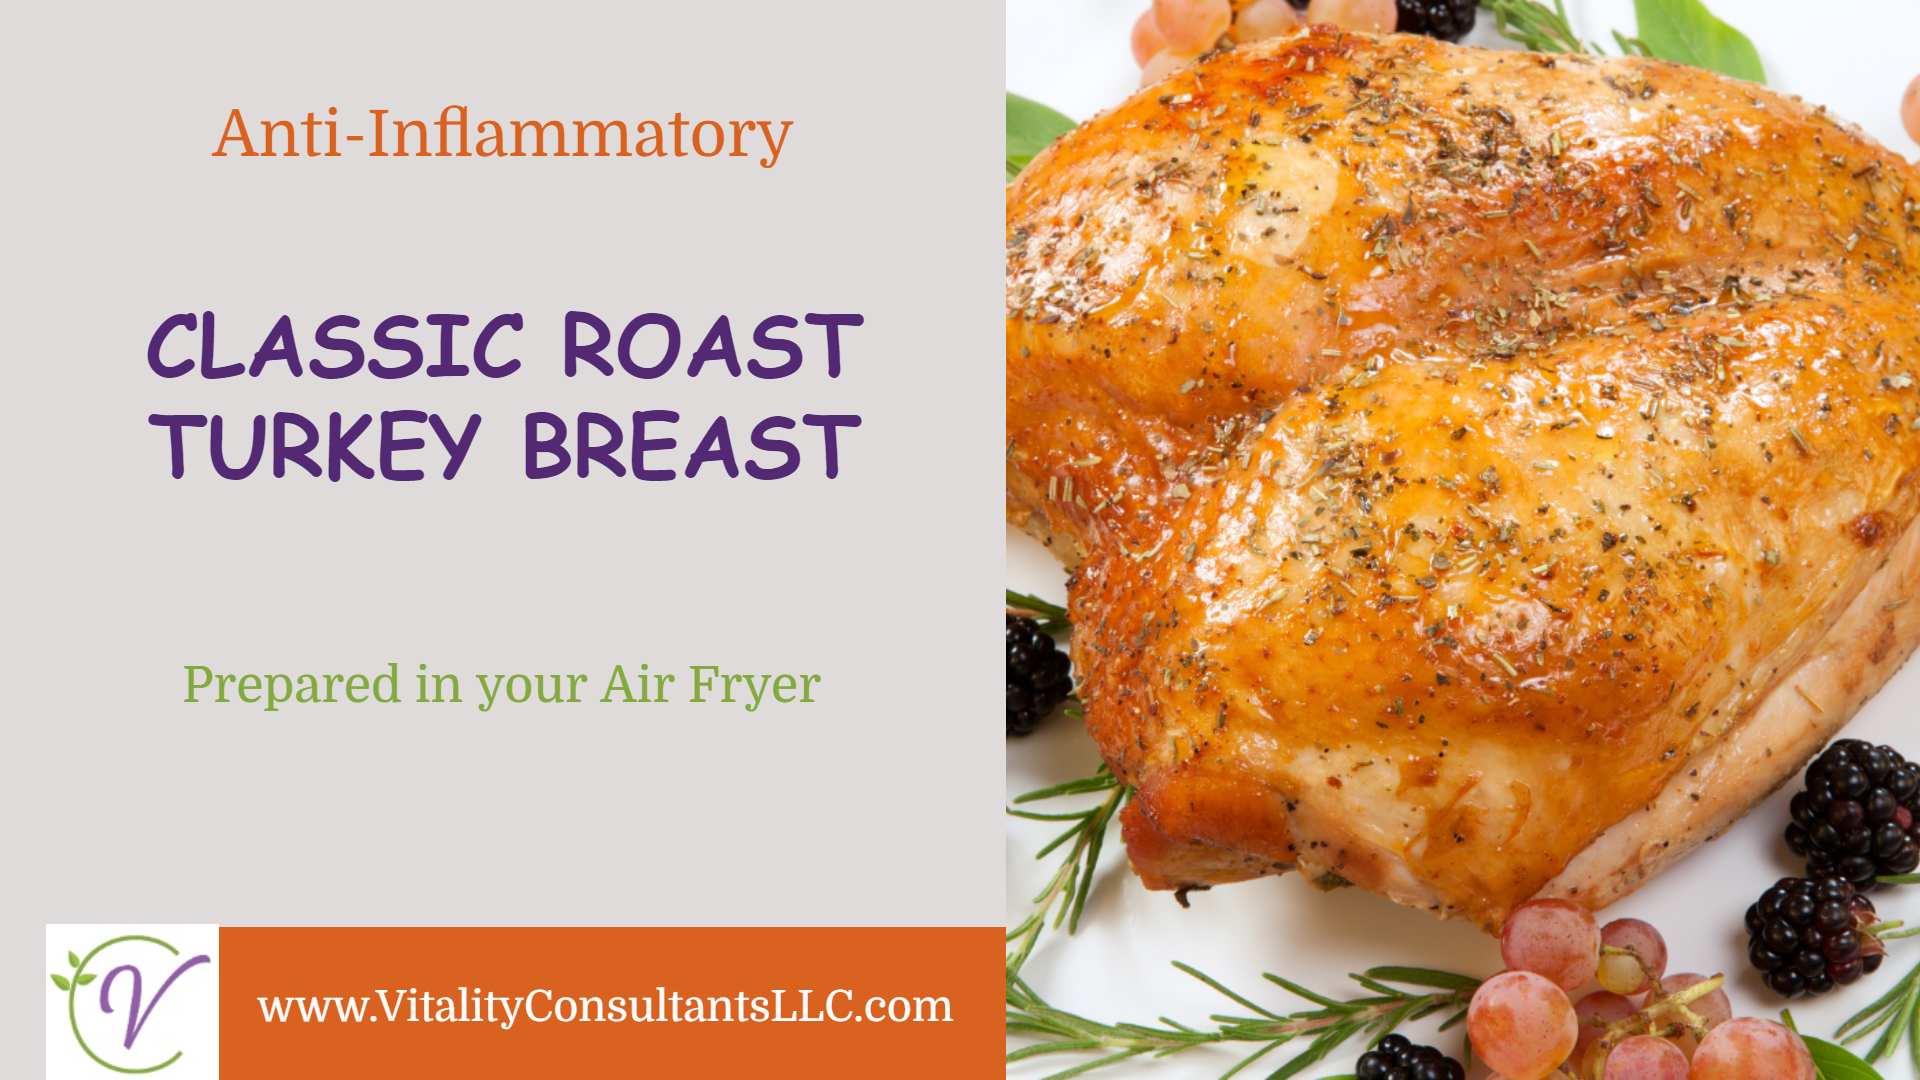 Classic Roast Turkey Breast